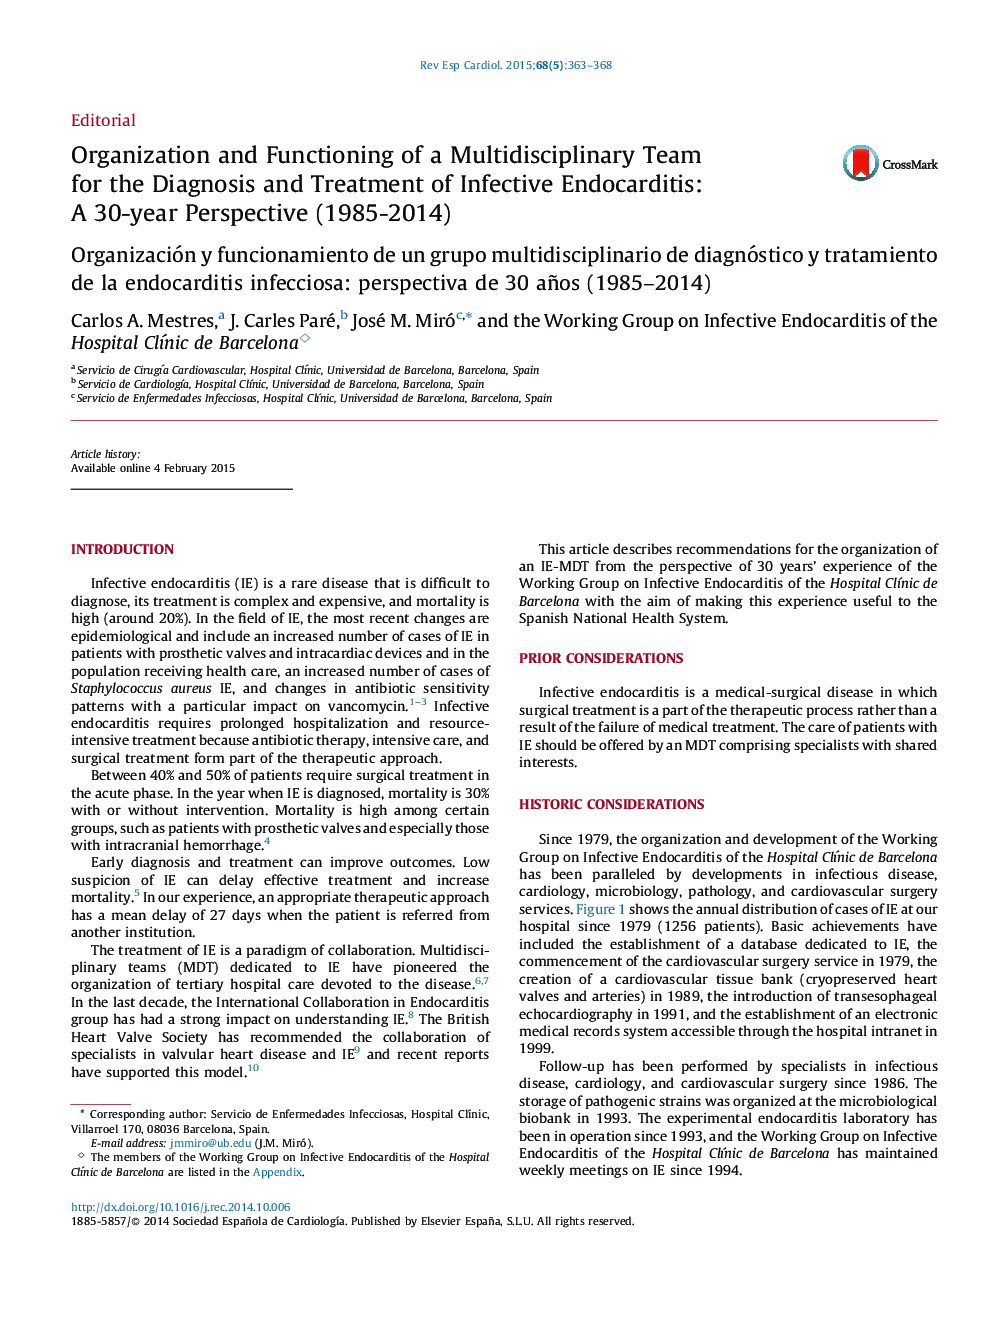 سازماندهی و کارکرد یک تیم چند رشته ای برای تشخیص و درمان اندوکاردیت عفونی: چشم انداز 30 ساله (1985-2014) 